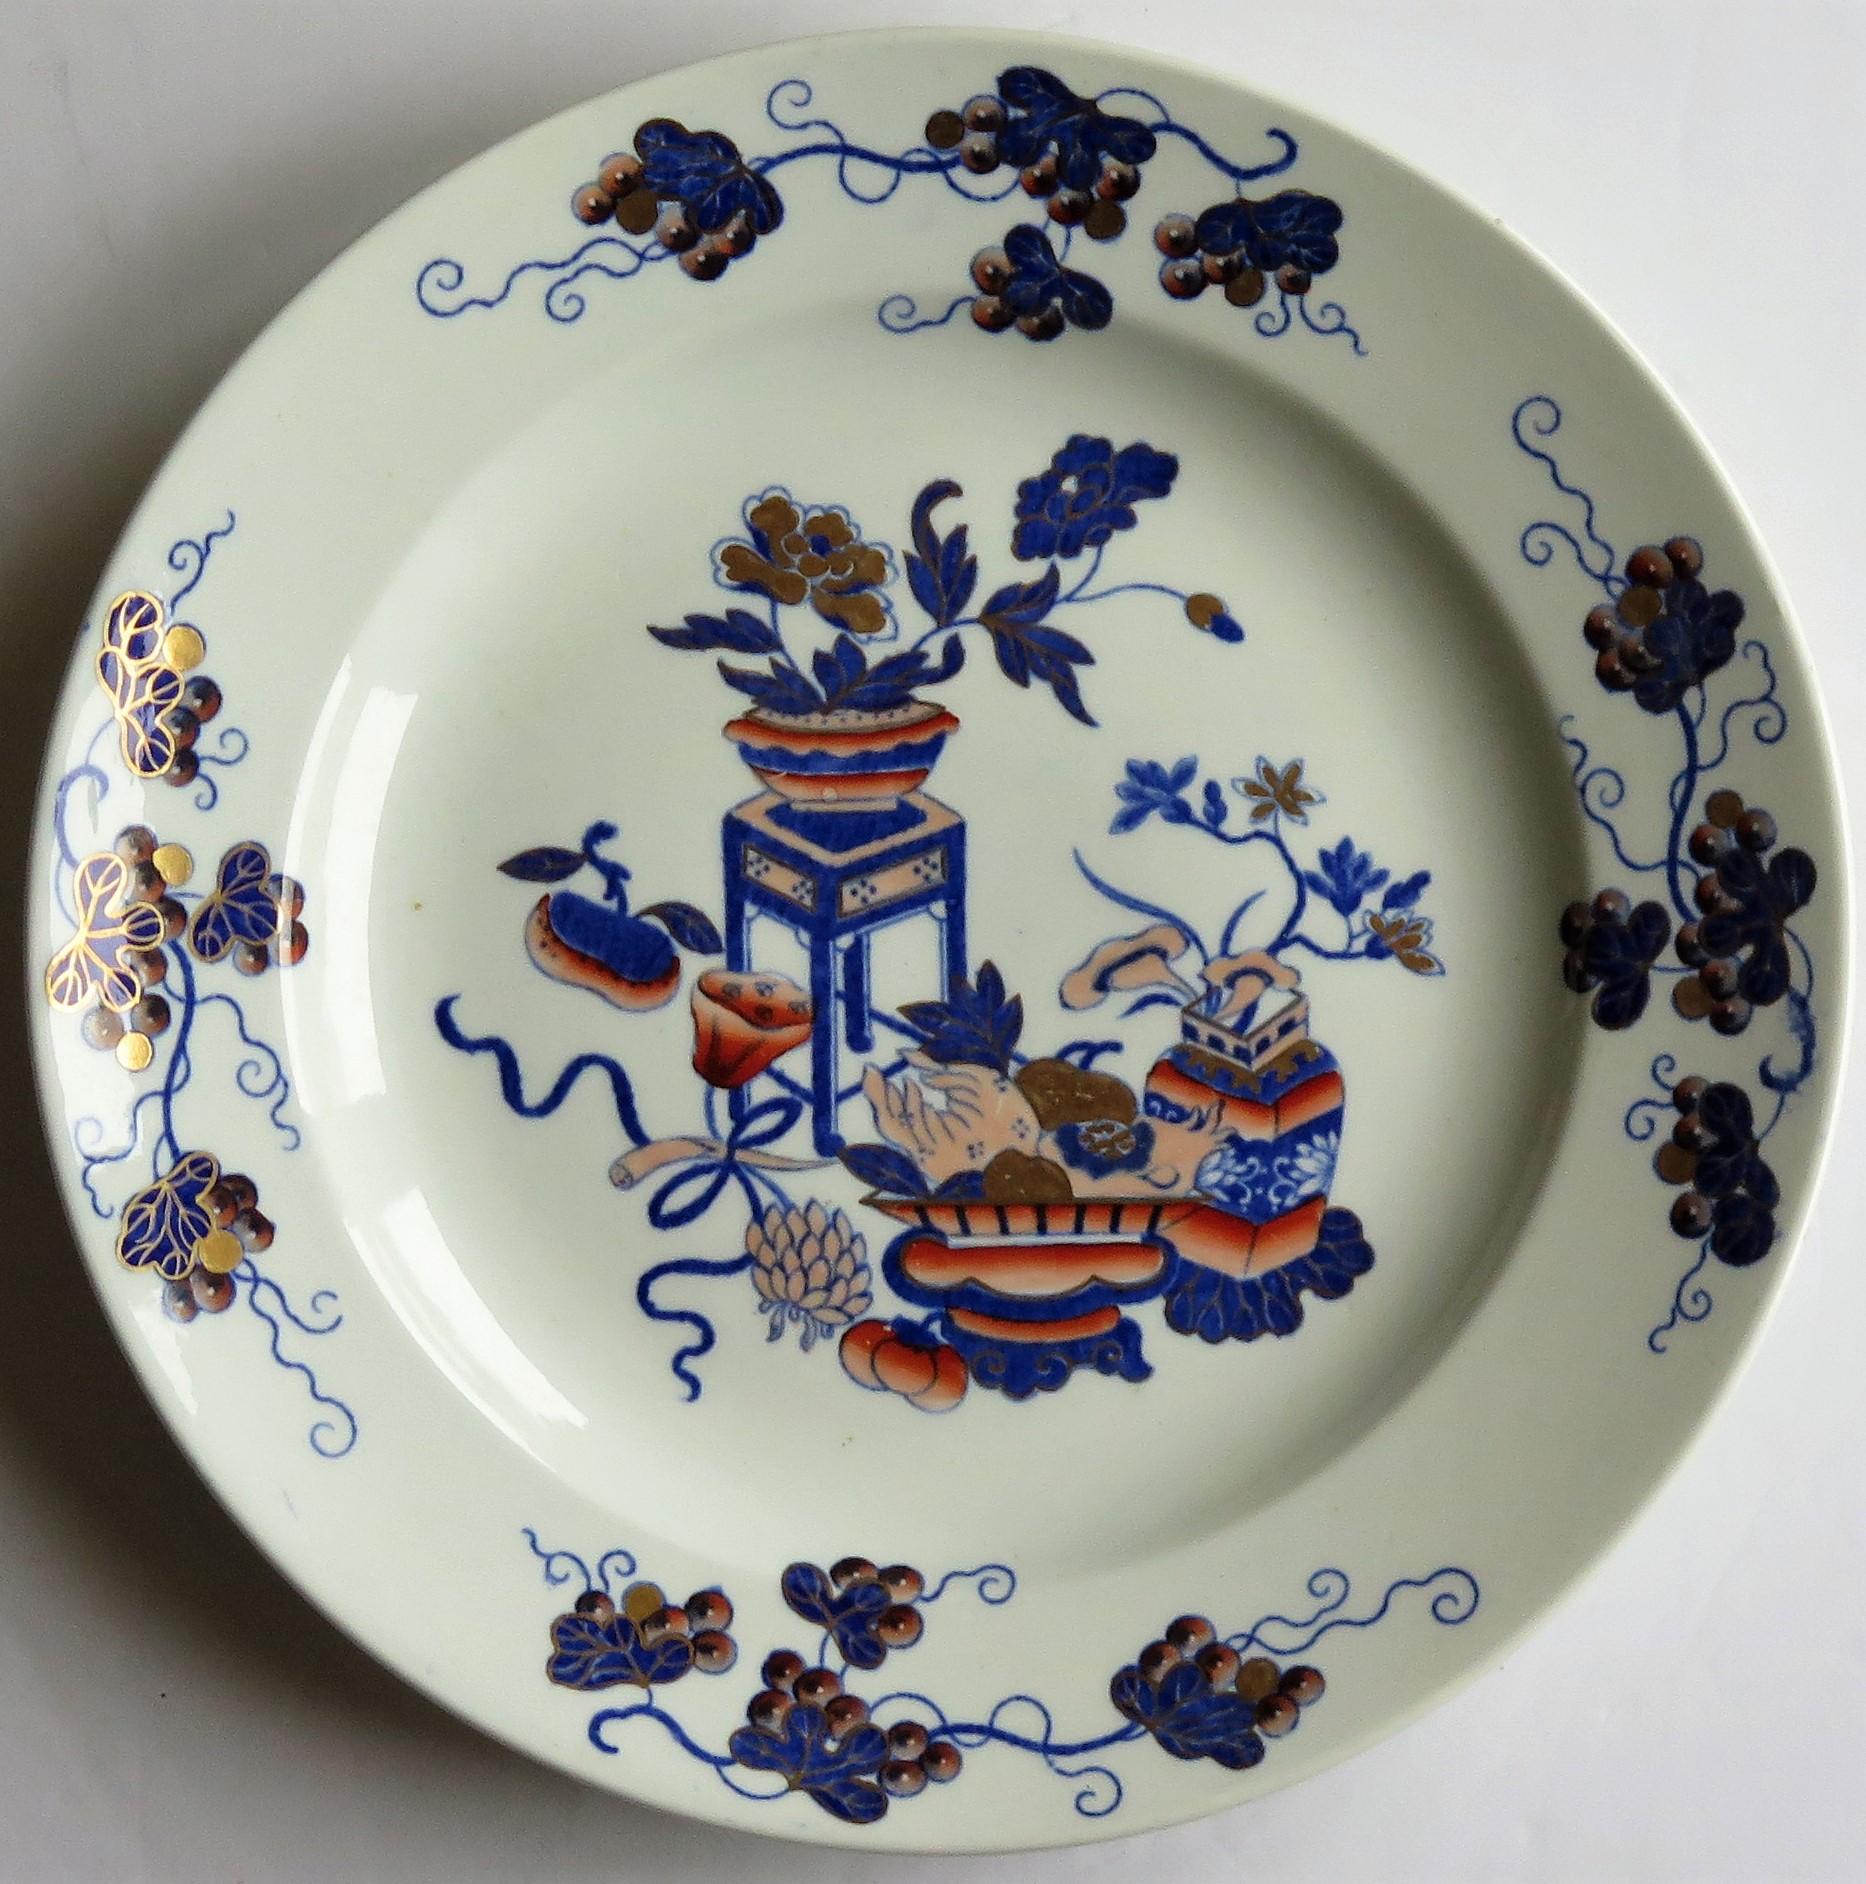 Il s'agit d'une magnifique assiette au motif Bow Pot, produite par la manufacture Spode et fabriquée dans un type de poterie appelé Pearl-ware, au début du 19e siècle, vers 1820.

Le motif s'appelle 